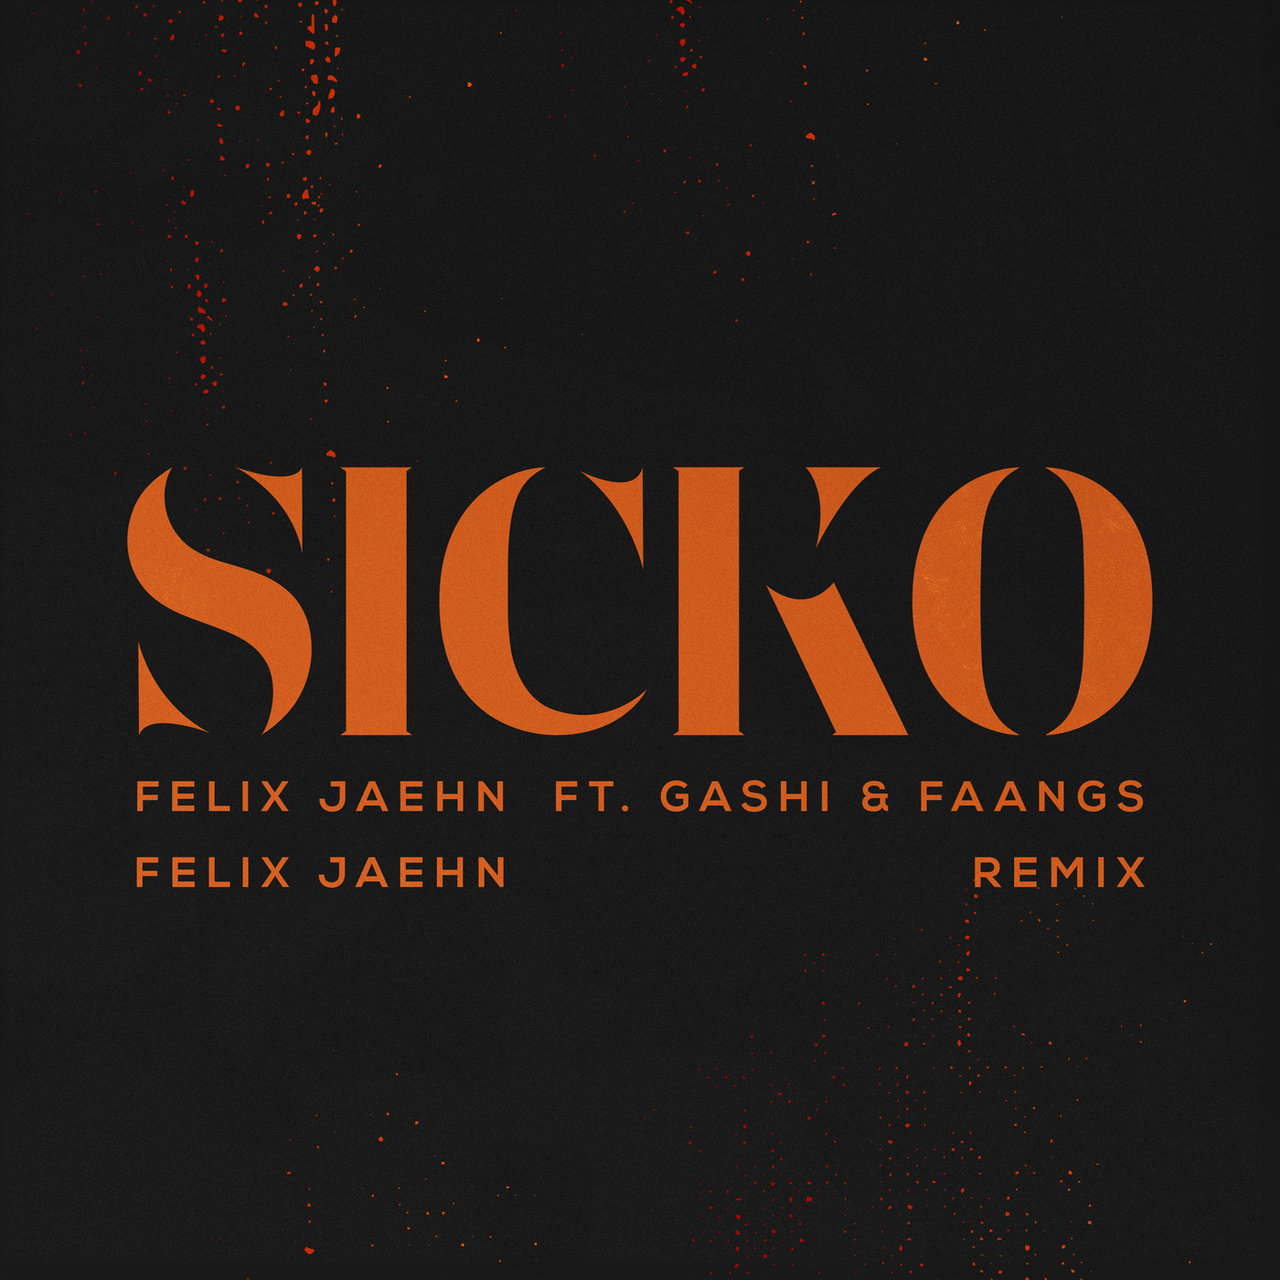 Felix Jaehn ft. featuring GASHI & FAANGS SICKO (Felix Jaehn Remix) cover artwork